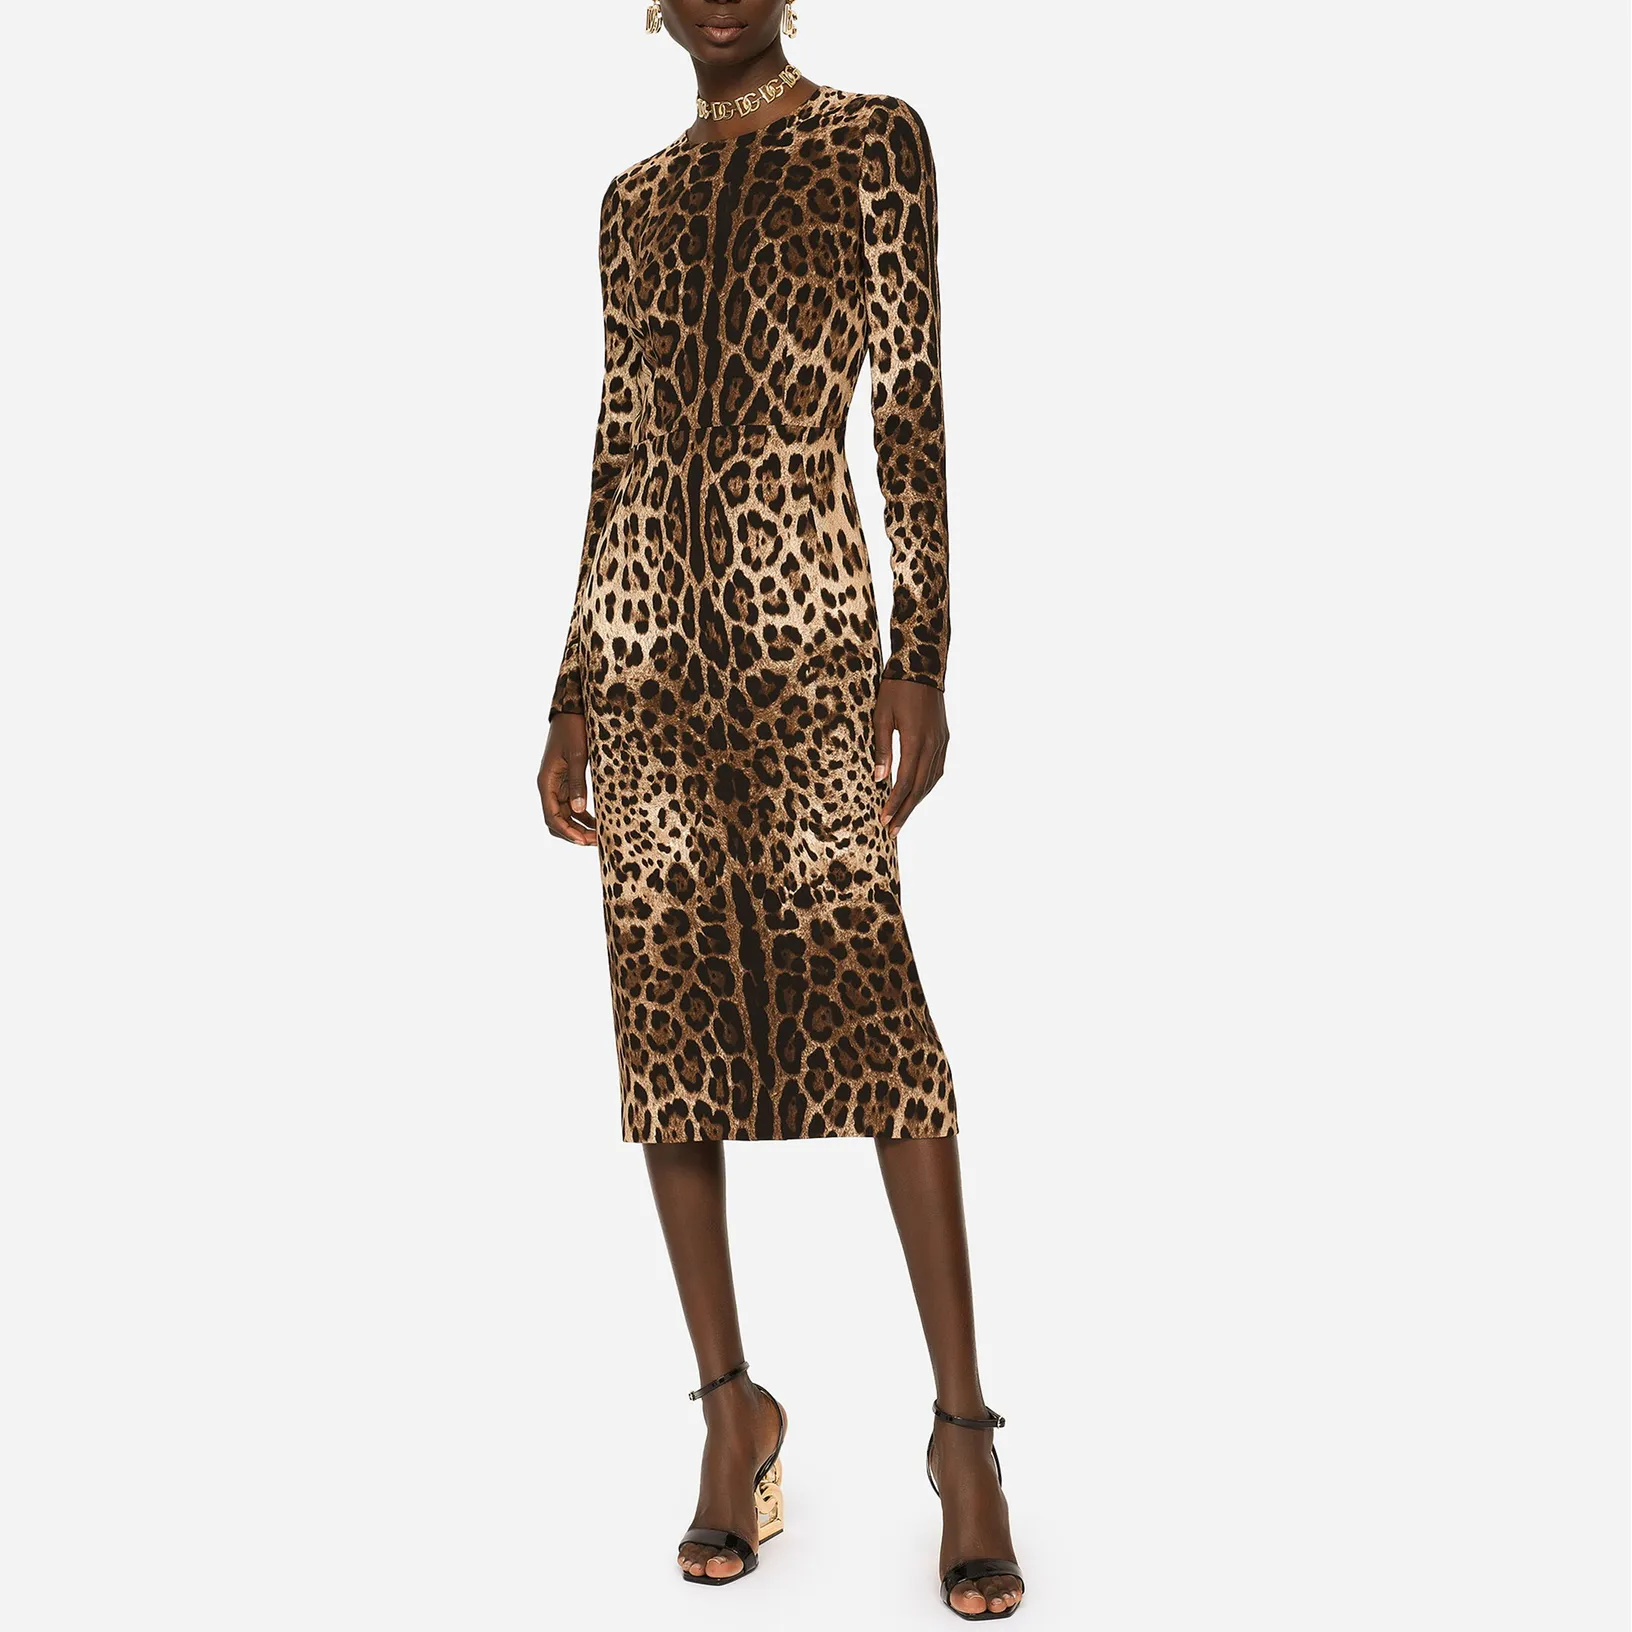 Abito da donna Marchio di moda europeo manica lunga vita arricciata Abito stampato leopardo in vera seta stretch satinato